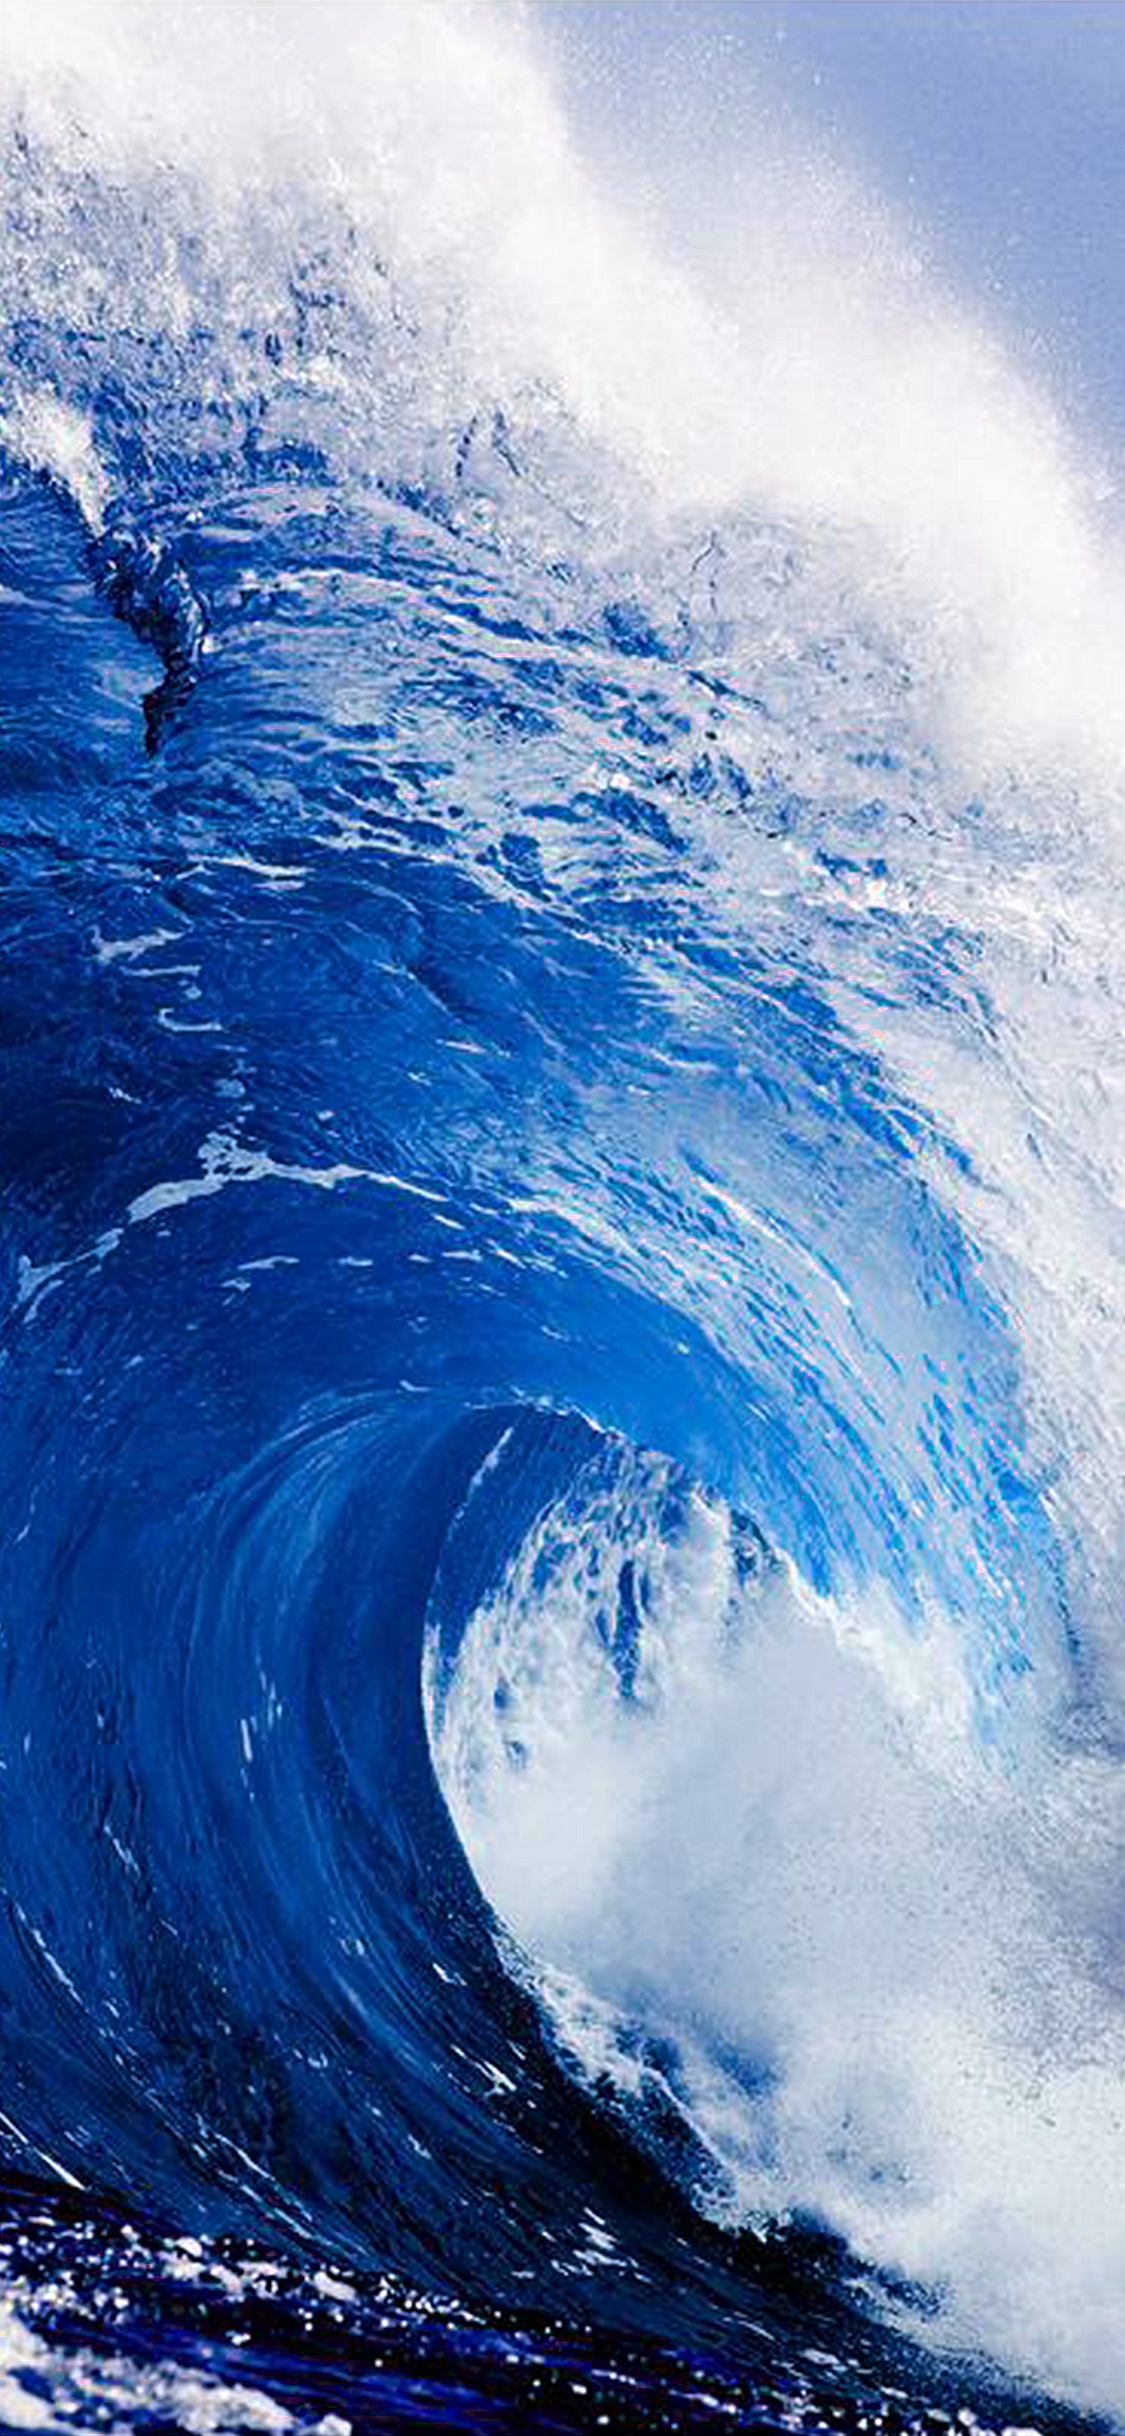 壁纸:蔚蓝的大海,波澜壮阔,却心静如水